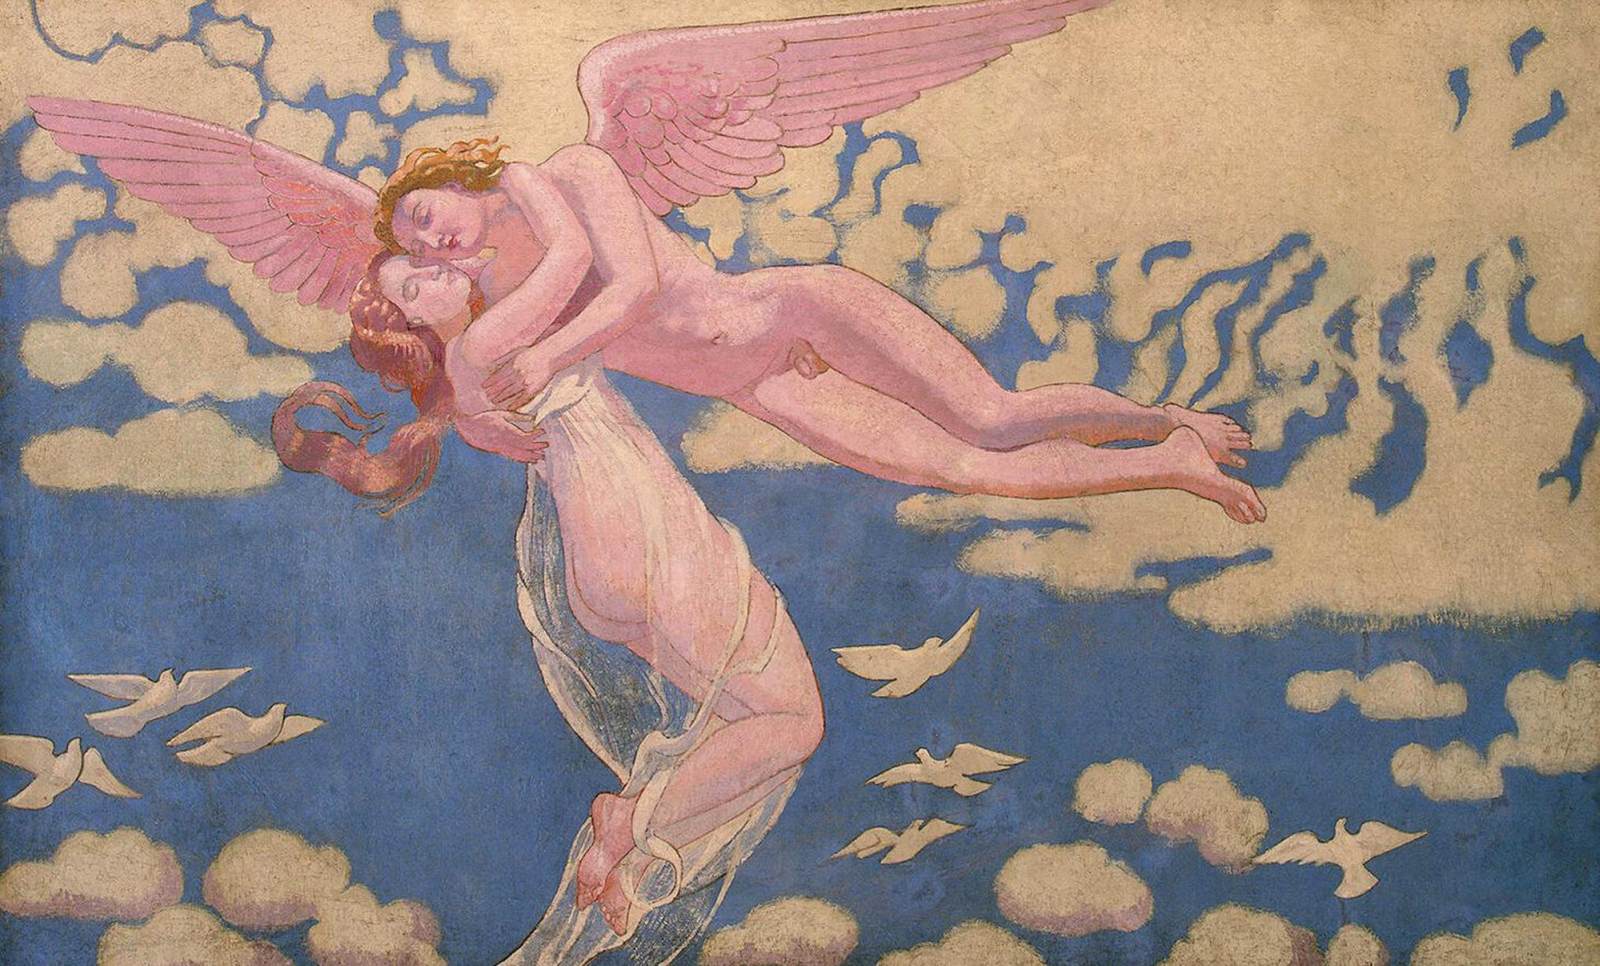 La storia della psiche: 7 Cupida caricando la psiche in paradiso